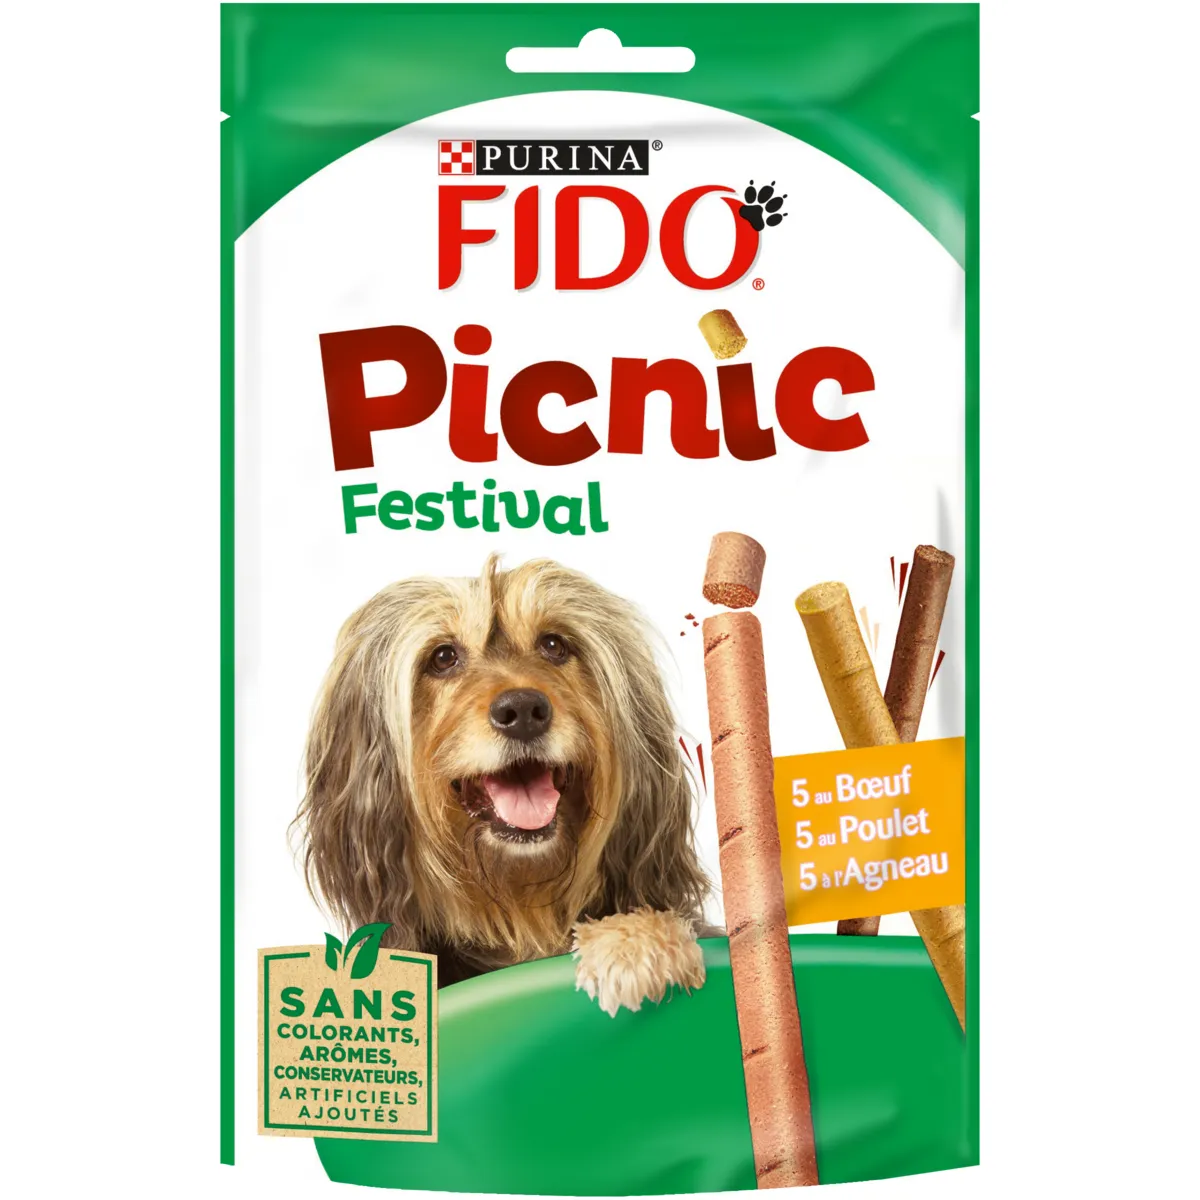  friandises pour chien bœuf poulet agneau fido picnic festival